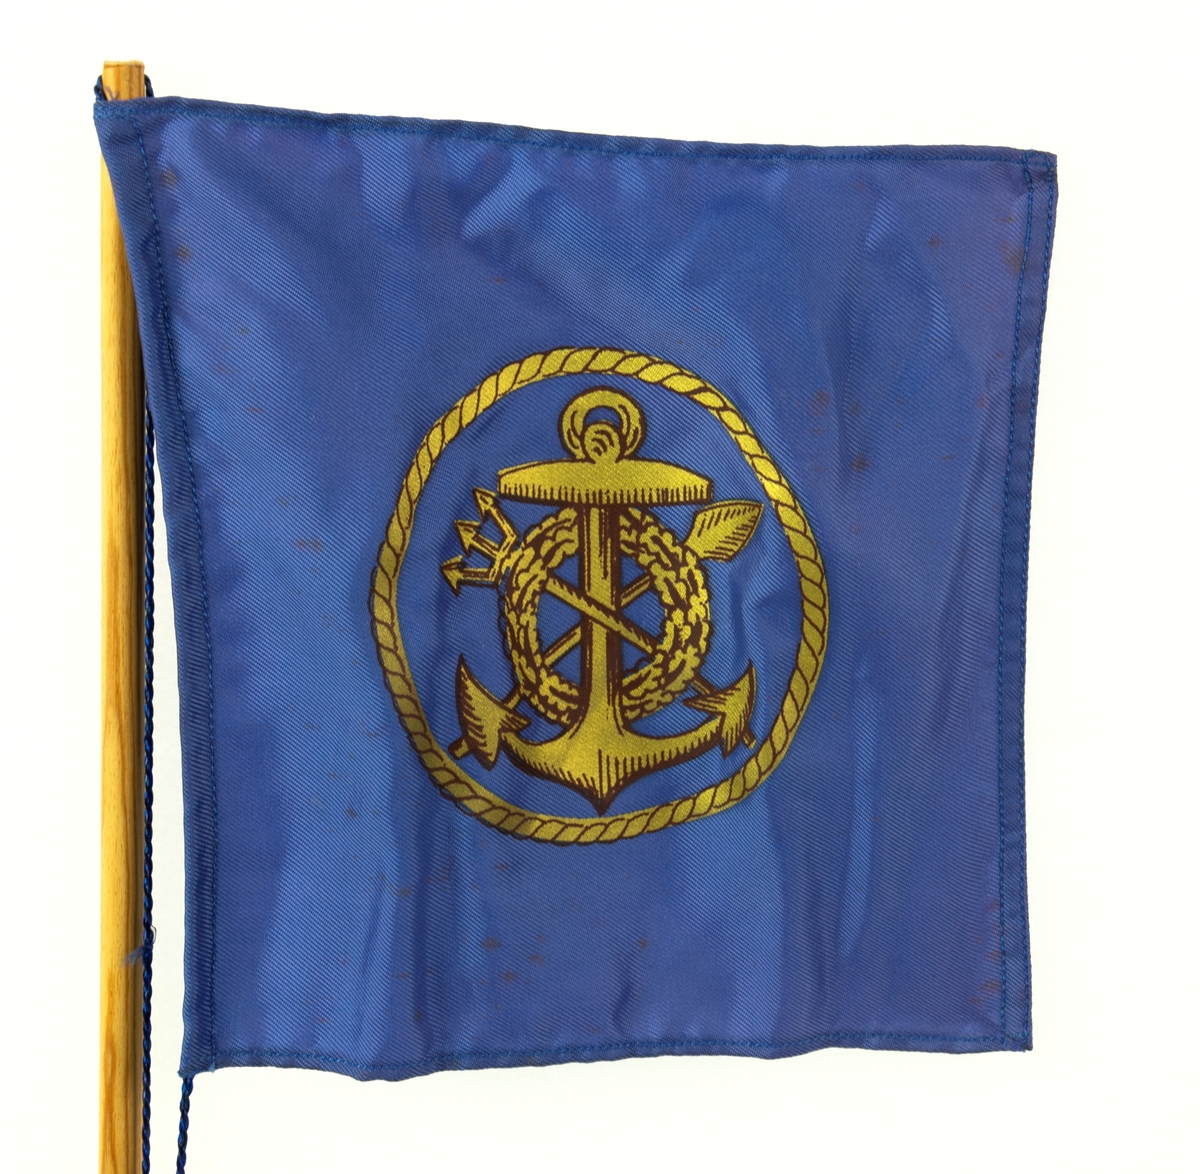 Bordsflagga med Besättningen Rydbergsgastarnas emblem i guld på blå botten. Text skriven på foten: "Ek av regalskeppet Riksäpplet som förliste vid Dalarö Skans år 1676. Stockholm den 31/8 1966. Yngve Lindbäck".